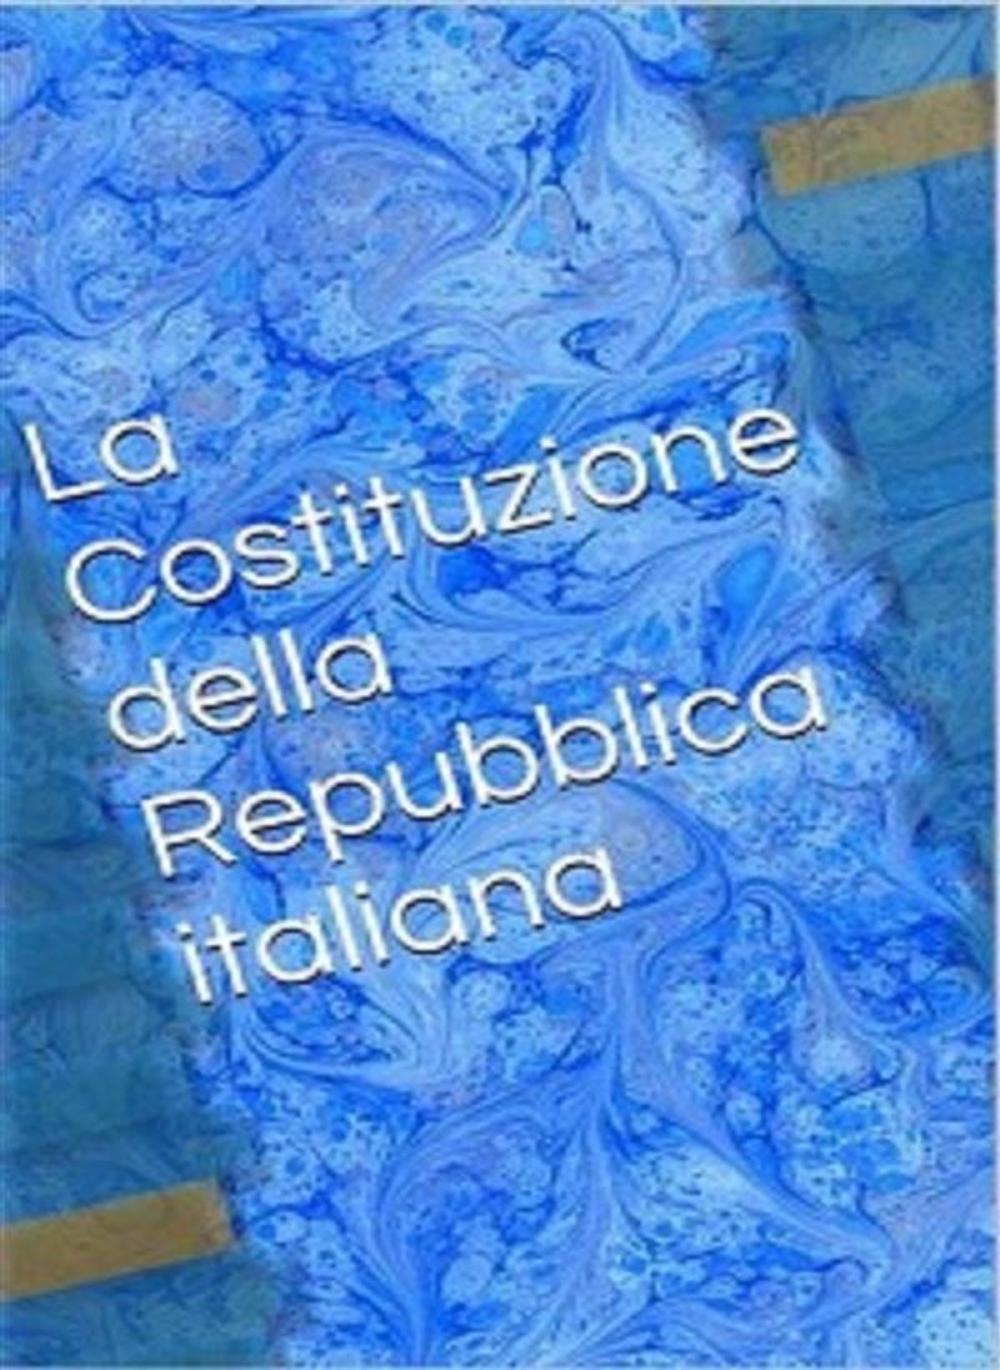 Big bigCover of La Costituzione della Repubblica italiana